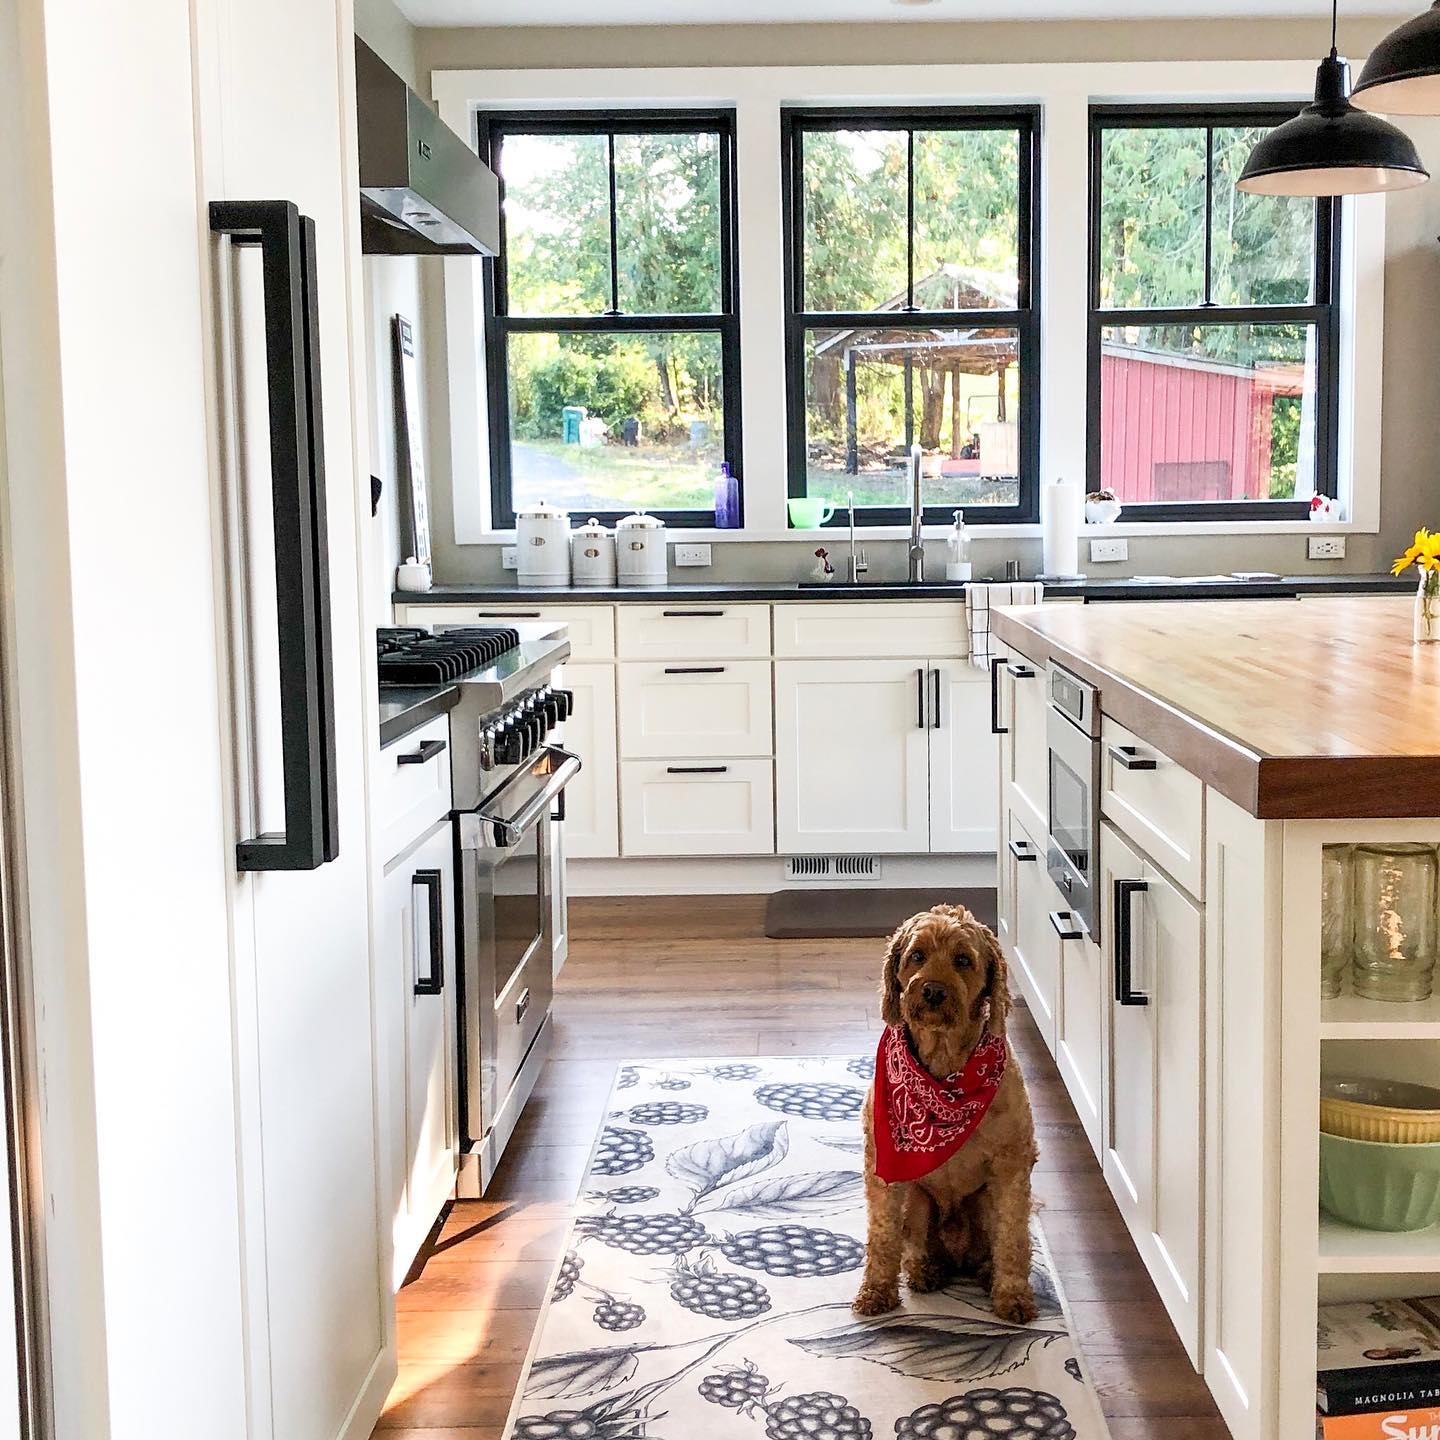 Modern kitchen interior with dog on rug.